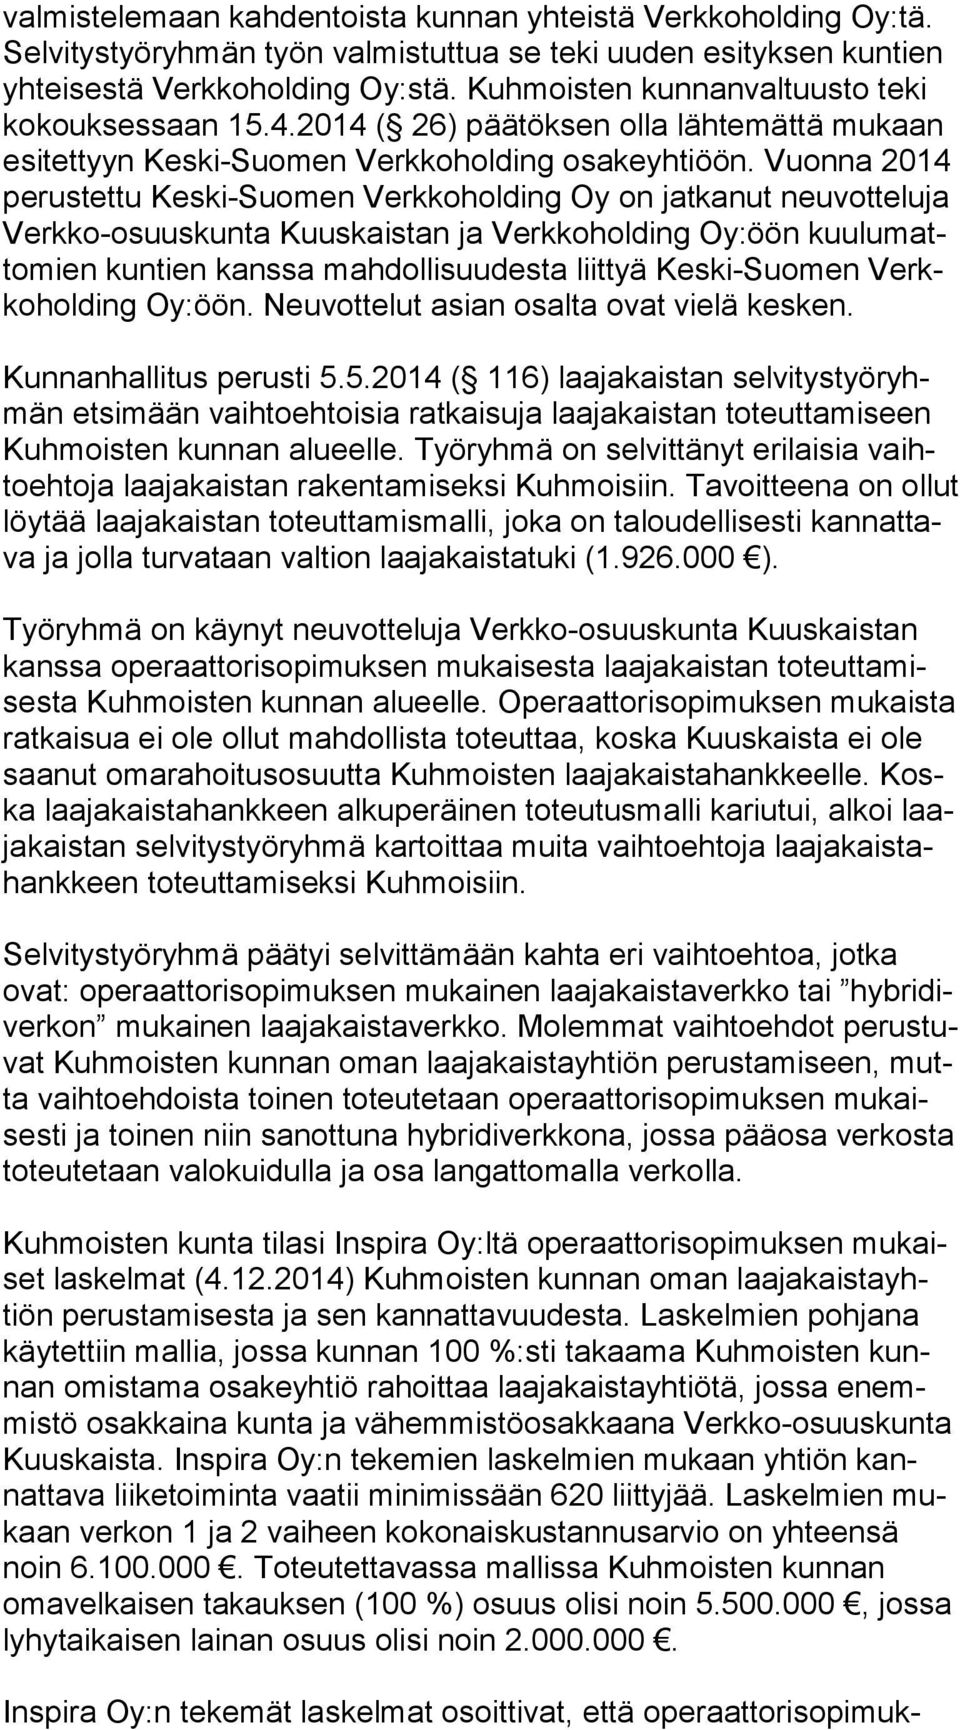 Vuonna 2014 pe rus tet tu Keski-Suomen Verkkoholding Oy on jatkanut neuvotteluja Verk ko-osuus kun ta Kuuskaistan ja Verkkoholding Oy:öön kuu lu matto mien kuntien kanssa mahdollisuudesta liittyä